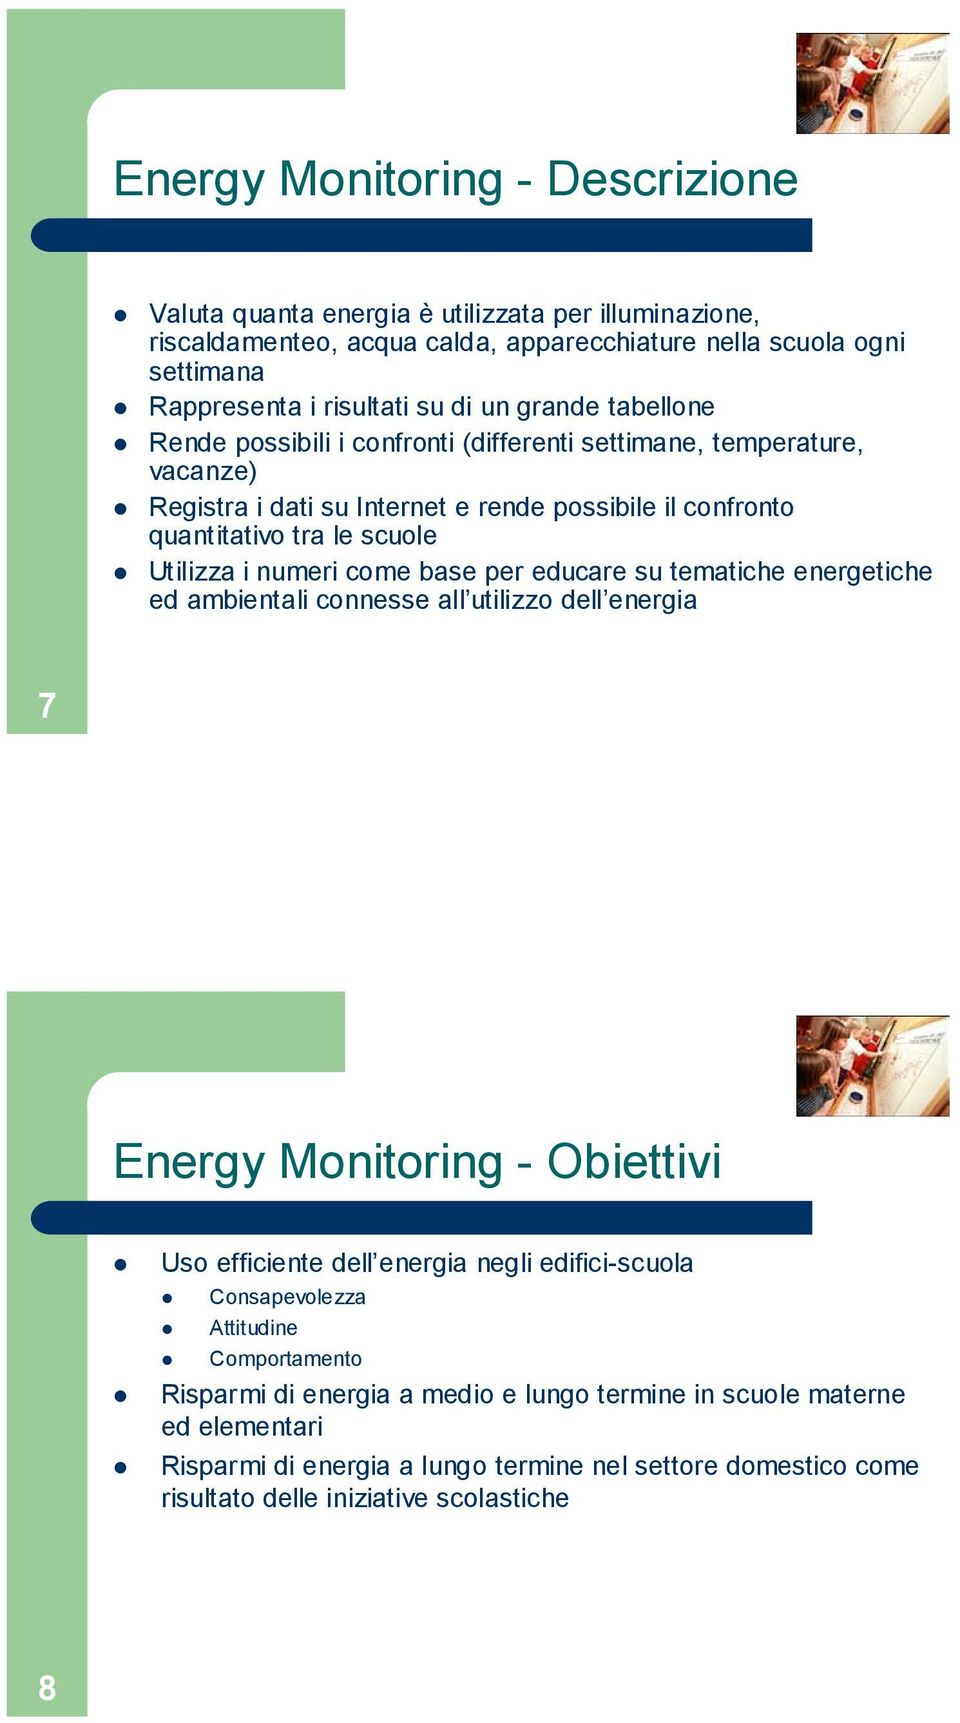 come base per educare su tematiche energetiche ed ambientali connesse all utilizzo dell energia 7 Energy Monitoring - Obiettivi Uso efficiente dell energia negli edifici-scuola Consapevolezza